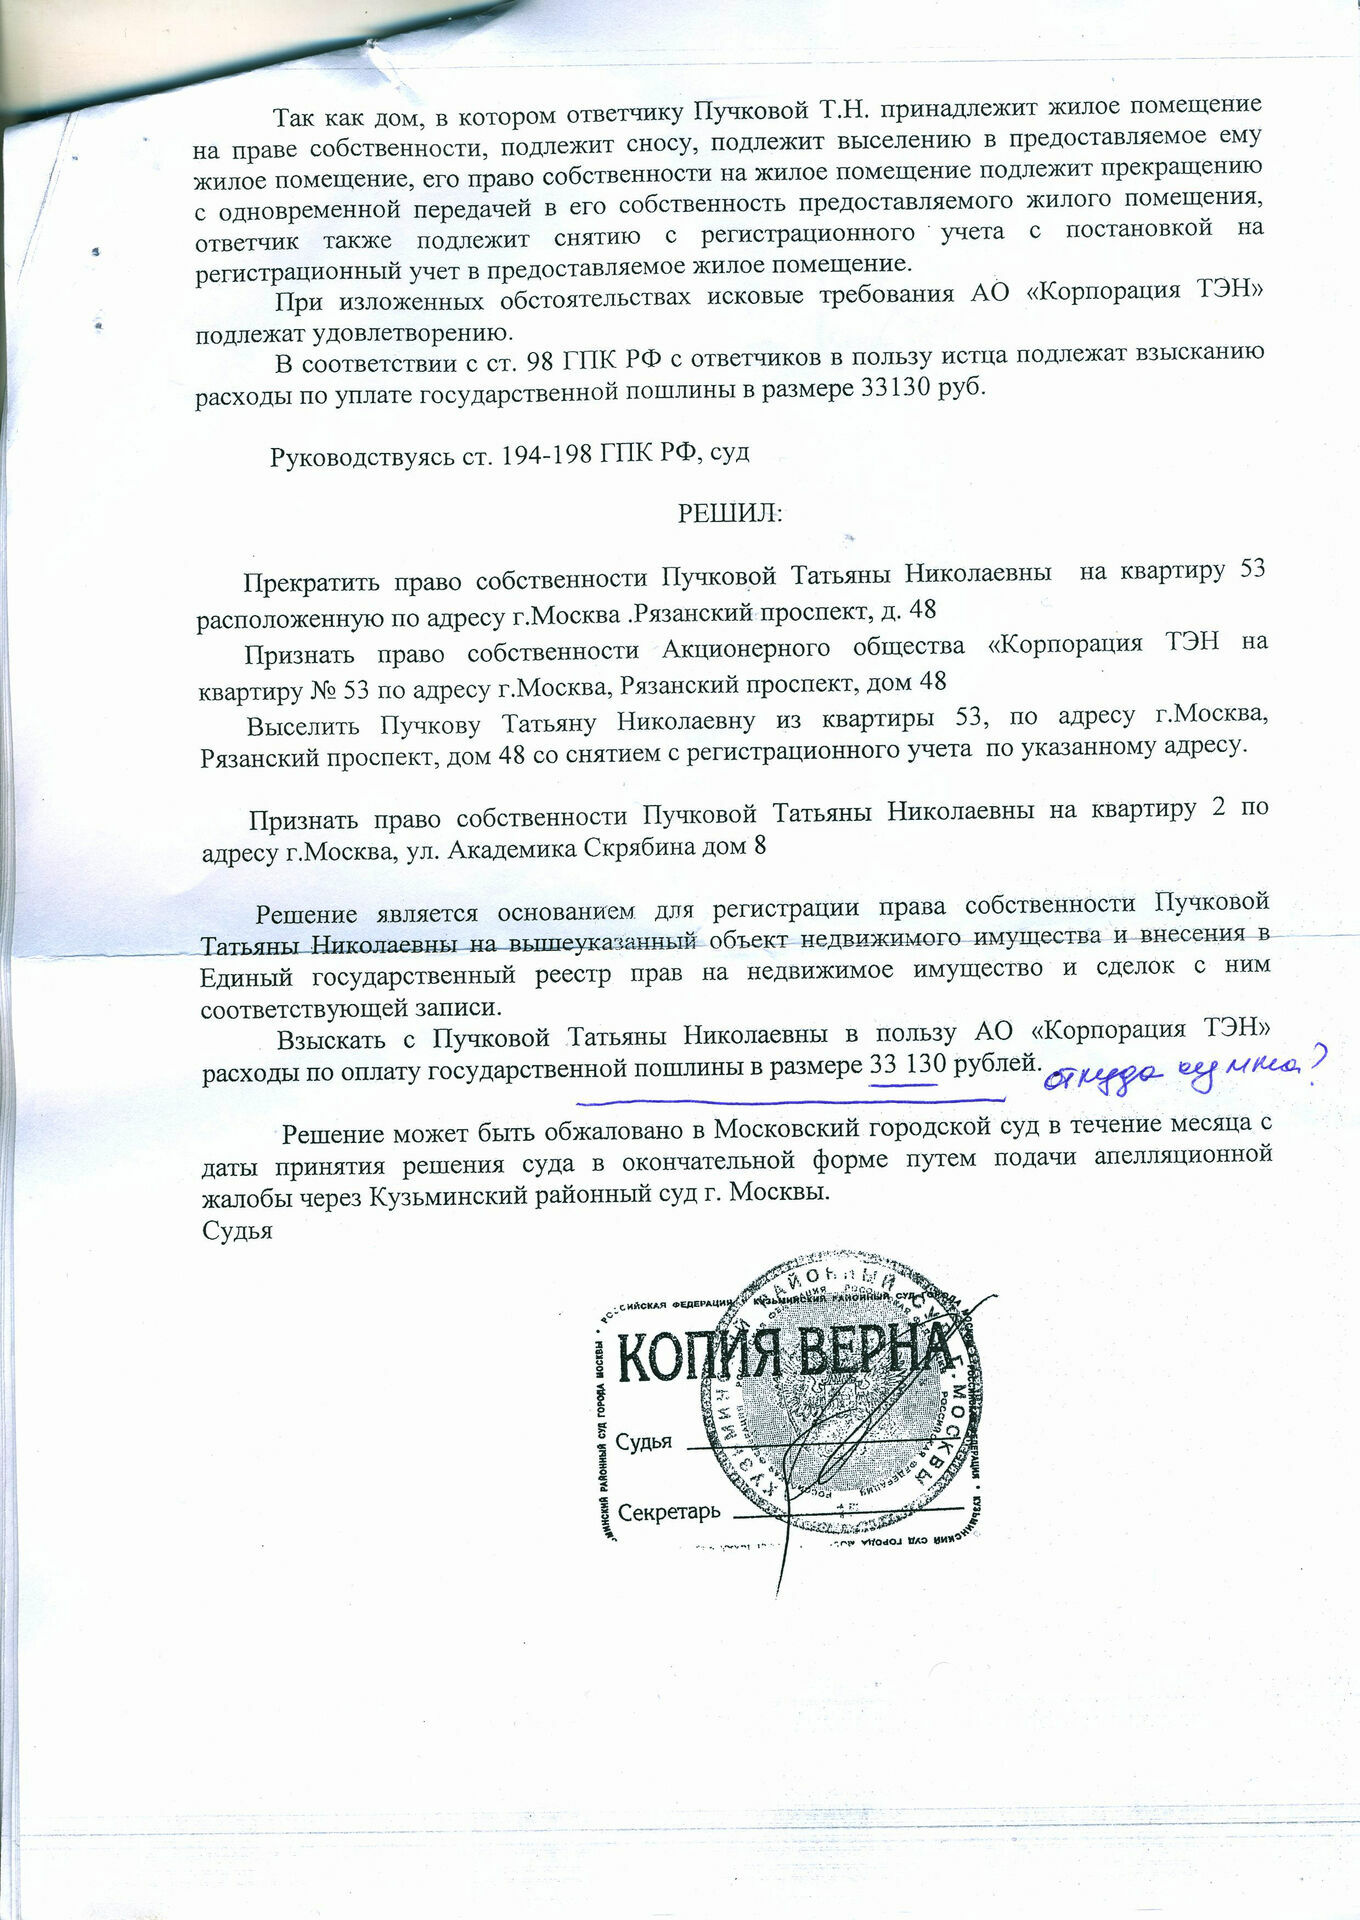 Татьяну Пучкову не только выселили из своего жилья, но еще и 33 тысячи рублей в виде судебных издержек взяли